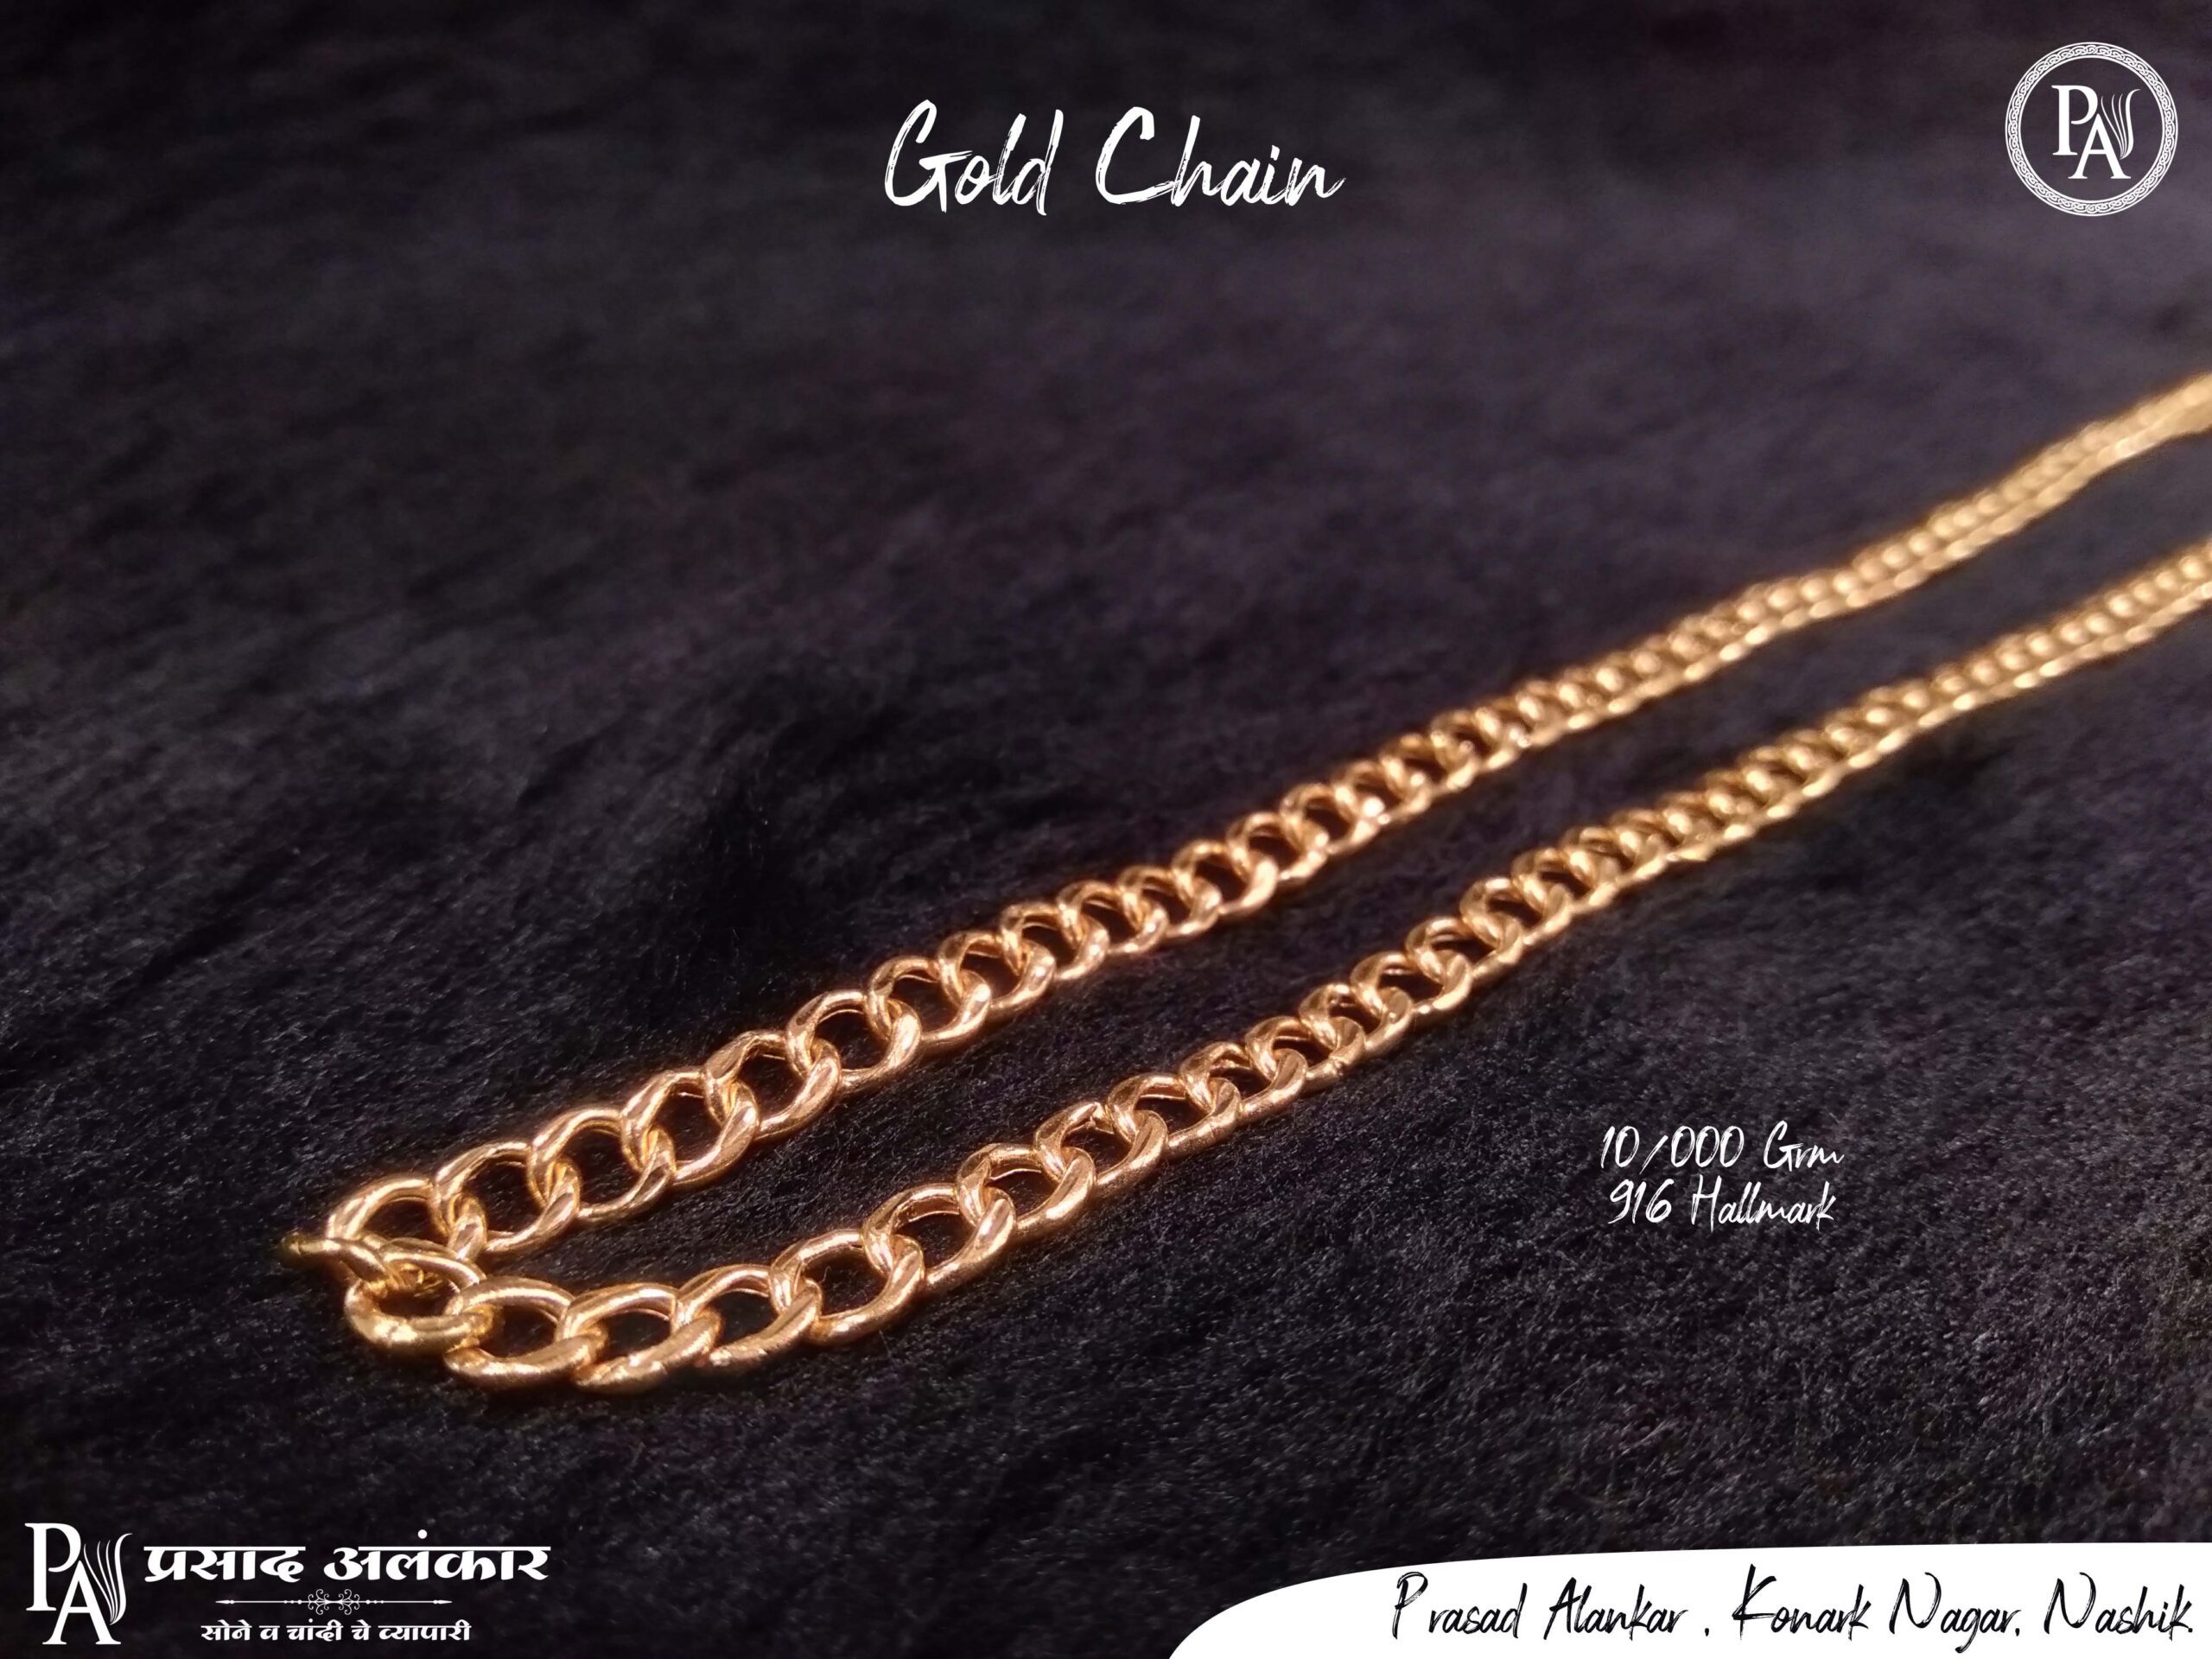 Gold chain under 10 grams, gold chain in 10 grams, lightweight gold chain, daily use gold chain, gold chain for men, Prasad alankar,jewellery shop in nashik